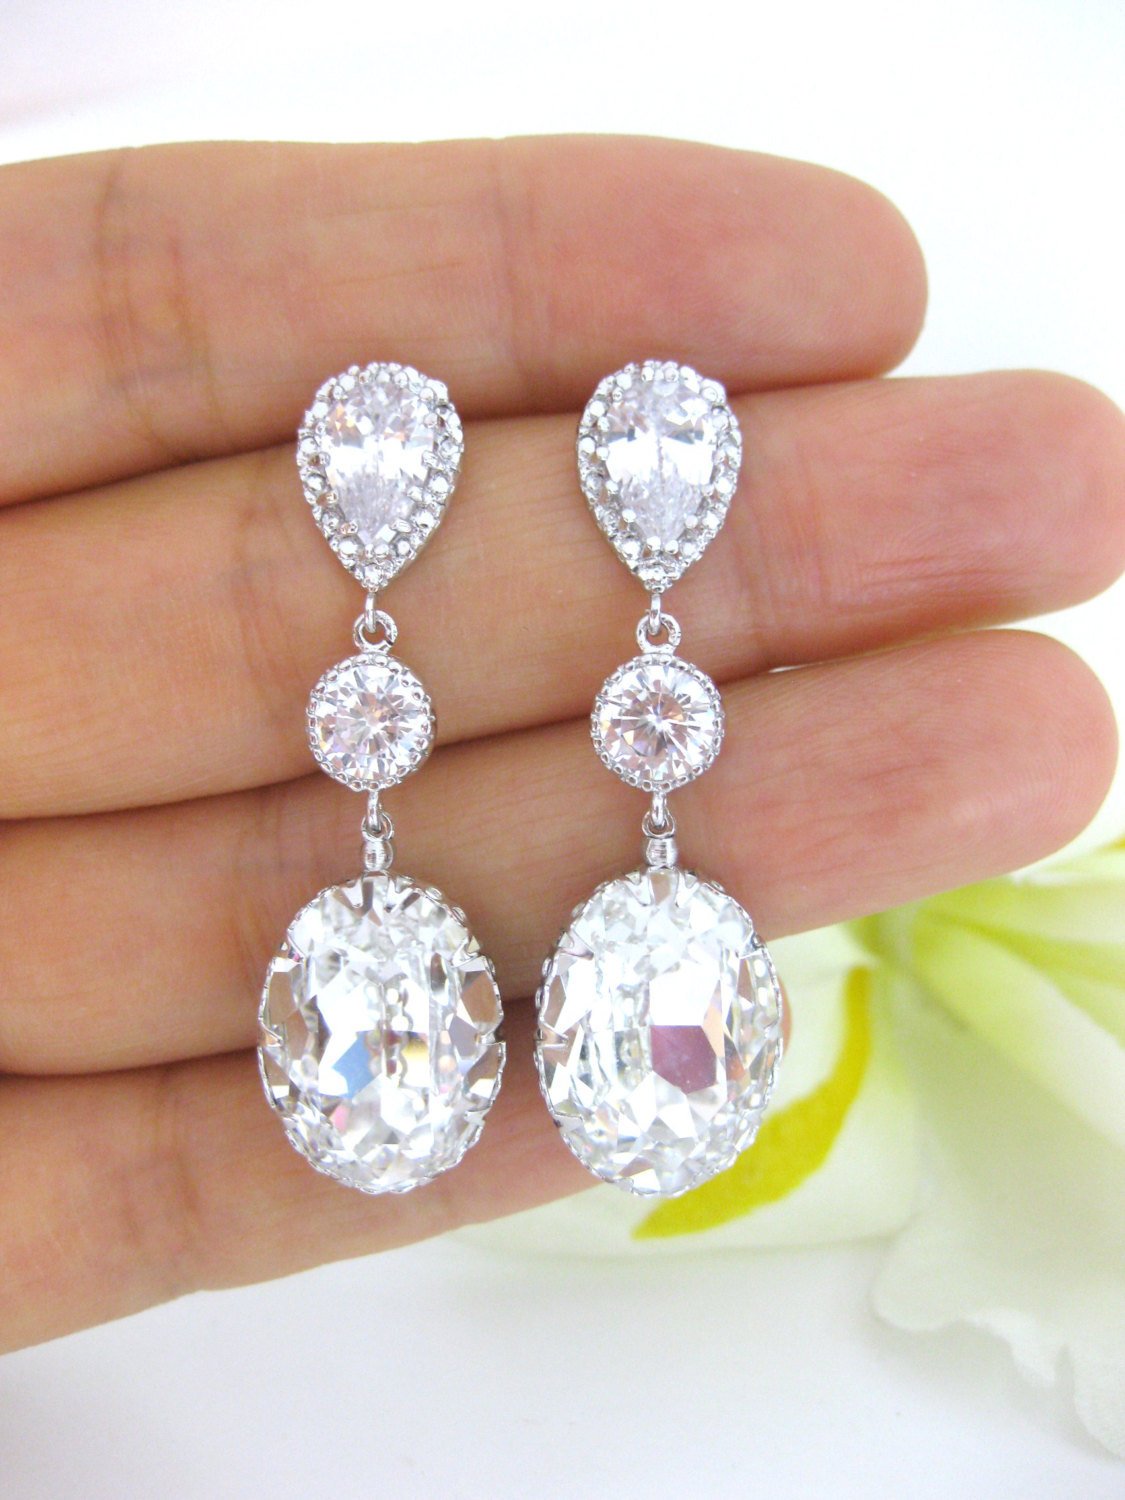 Bridal Crystal Teardrop Earrings Swarovski Oval Teardrop Earrings Wedding Jewelry Bridesmaids Gift Drop Dangle Earrings (e175)